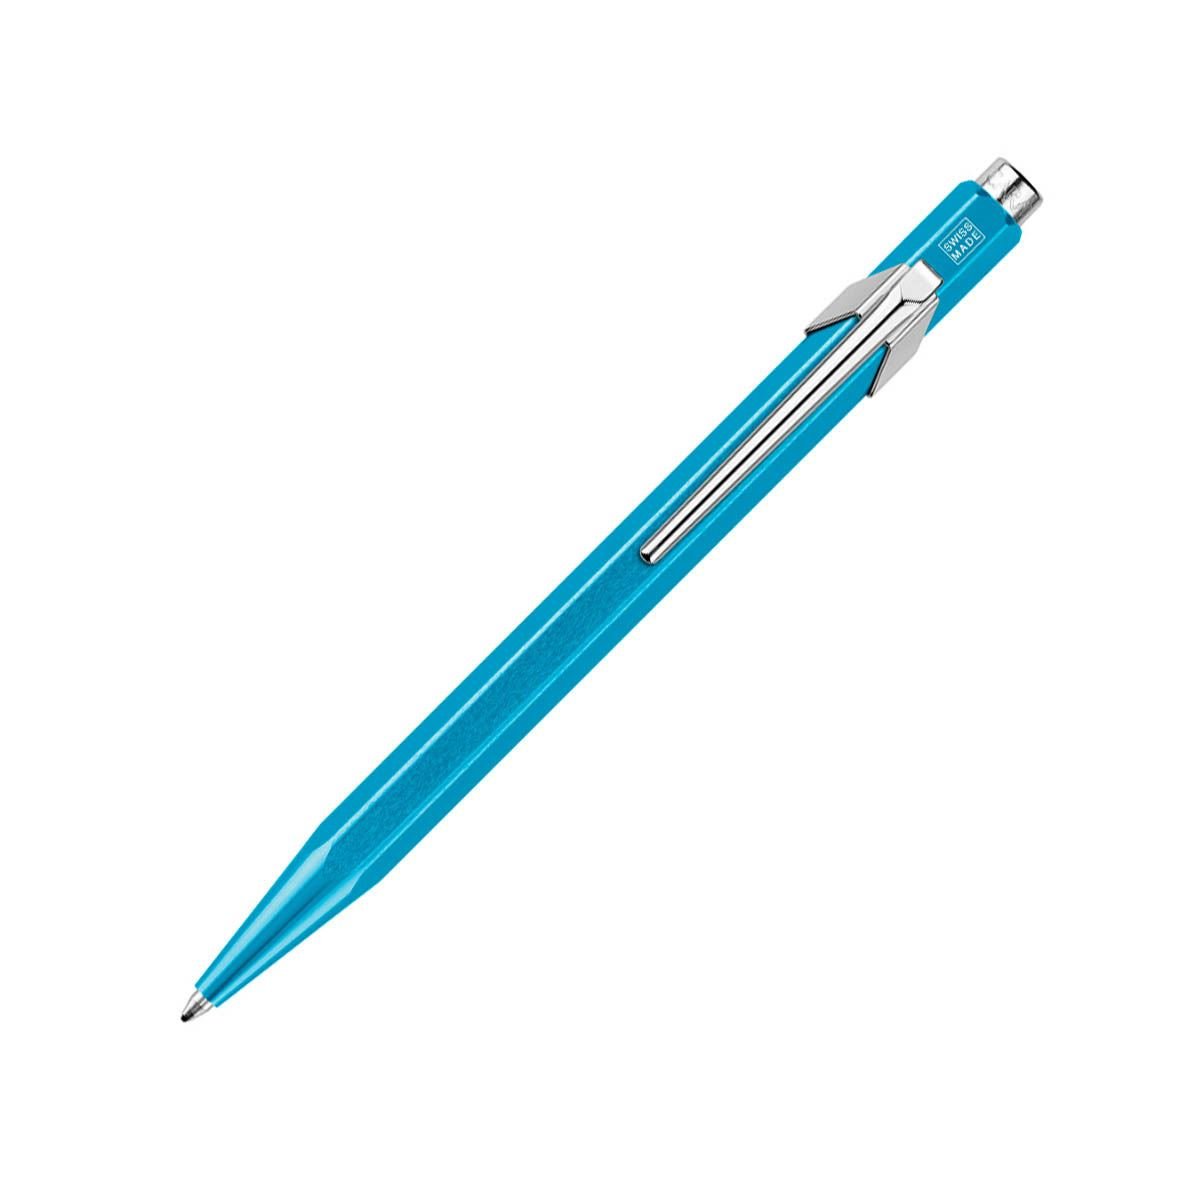 Bolígrafo color tuquesa con estuche